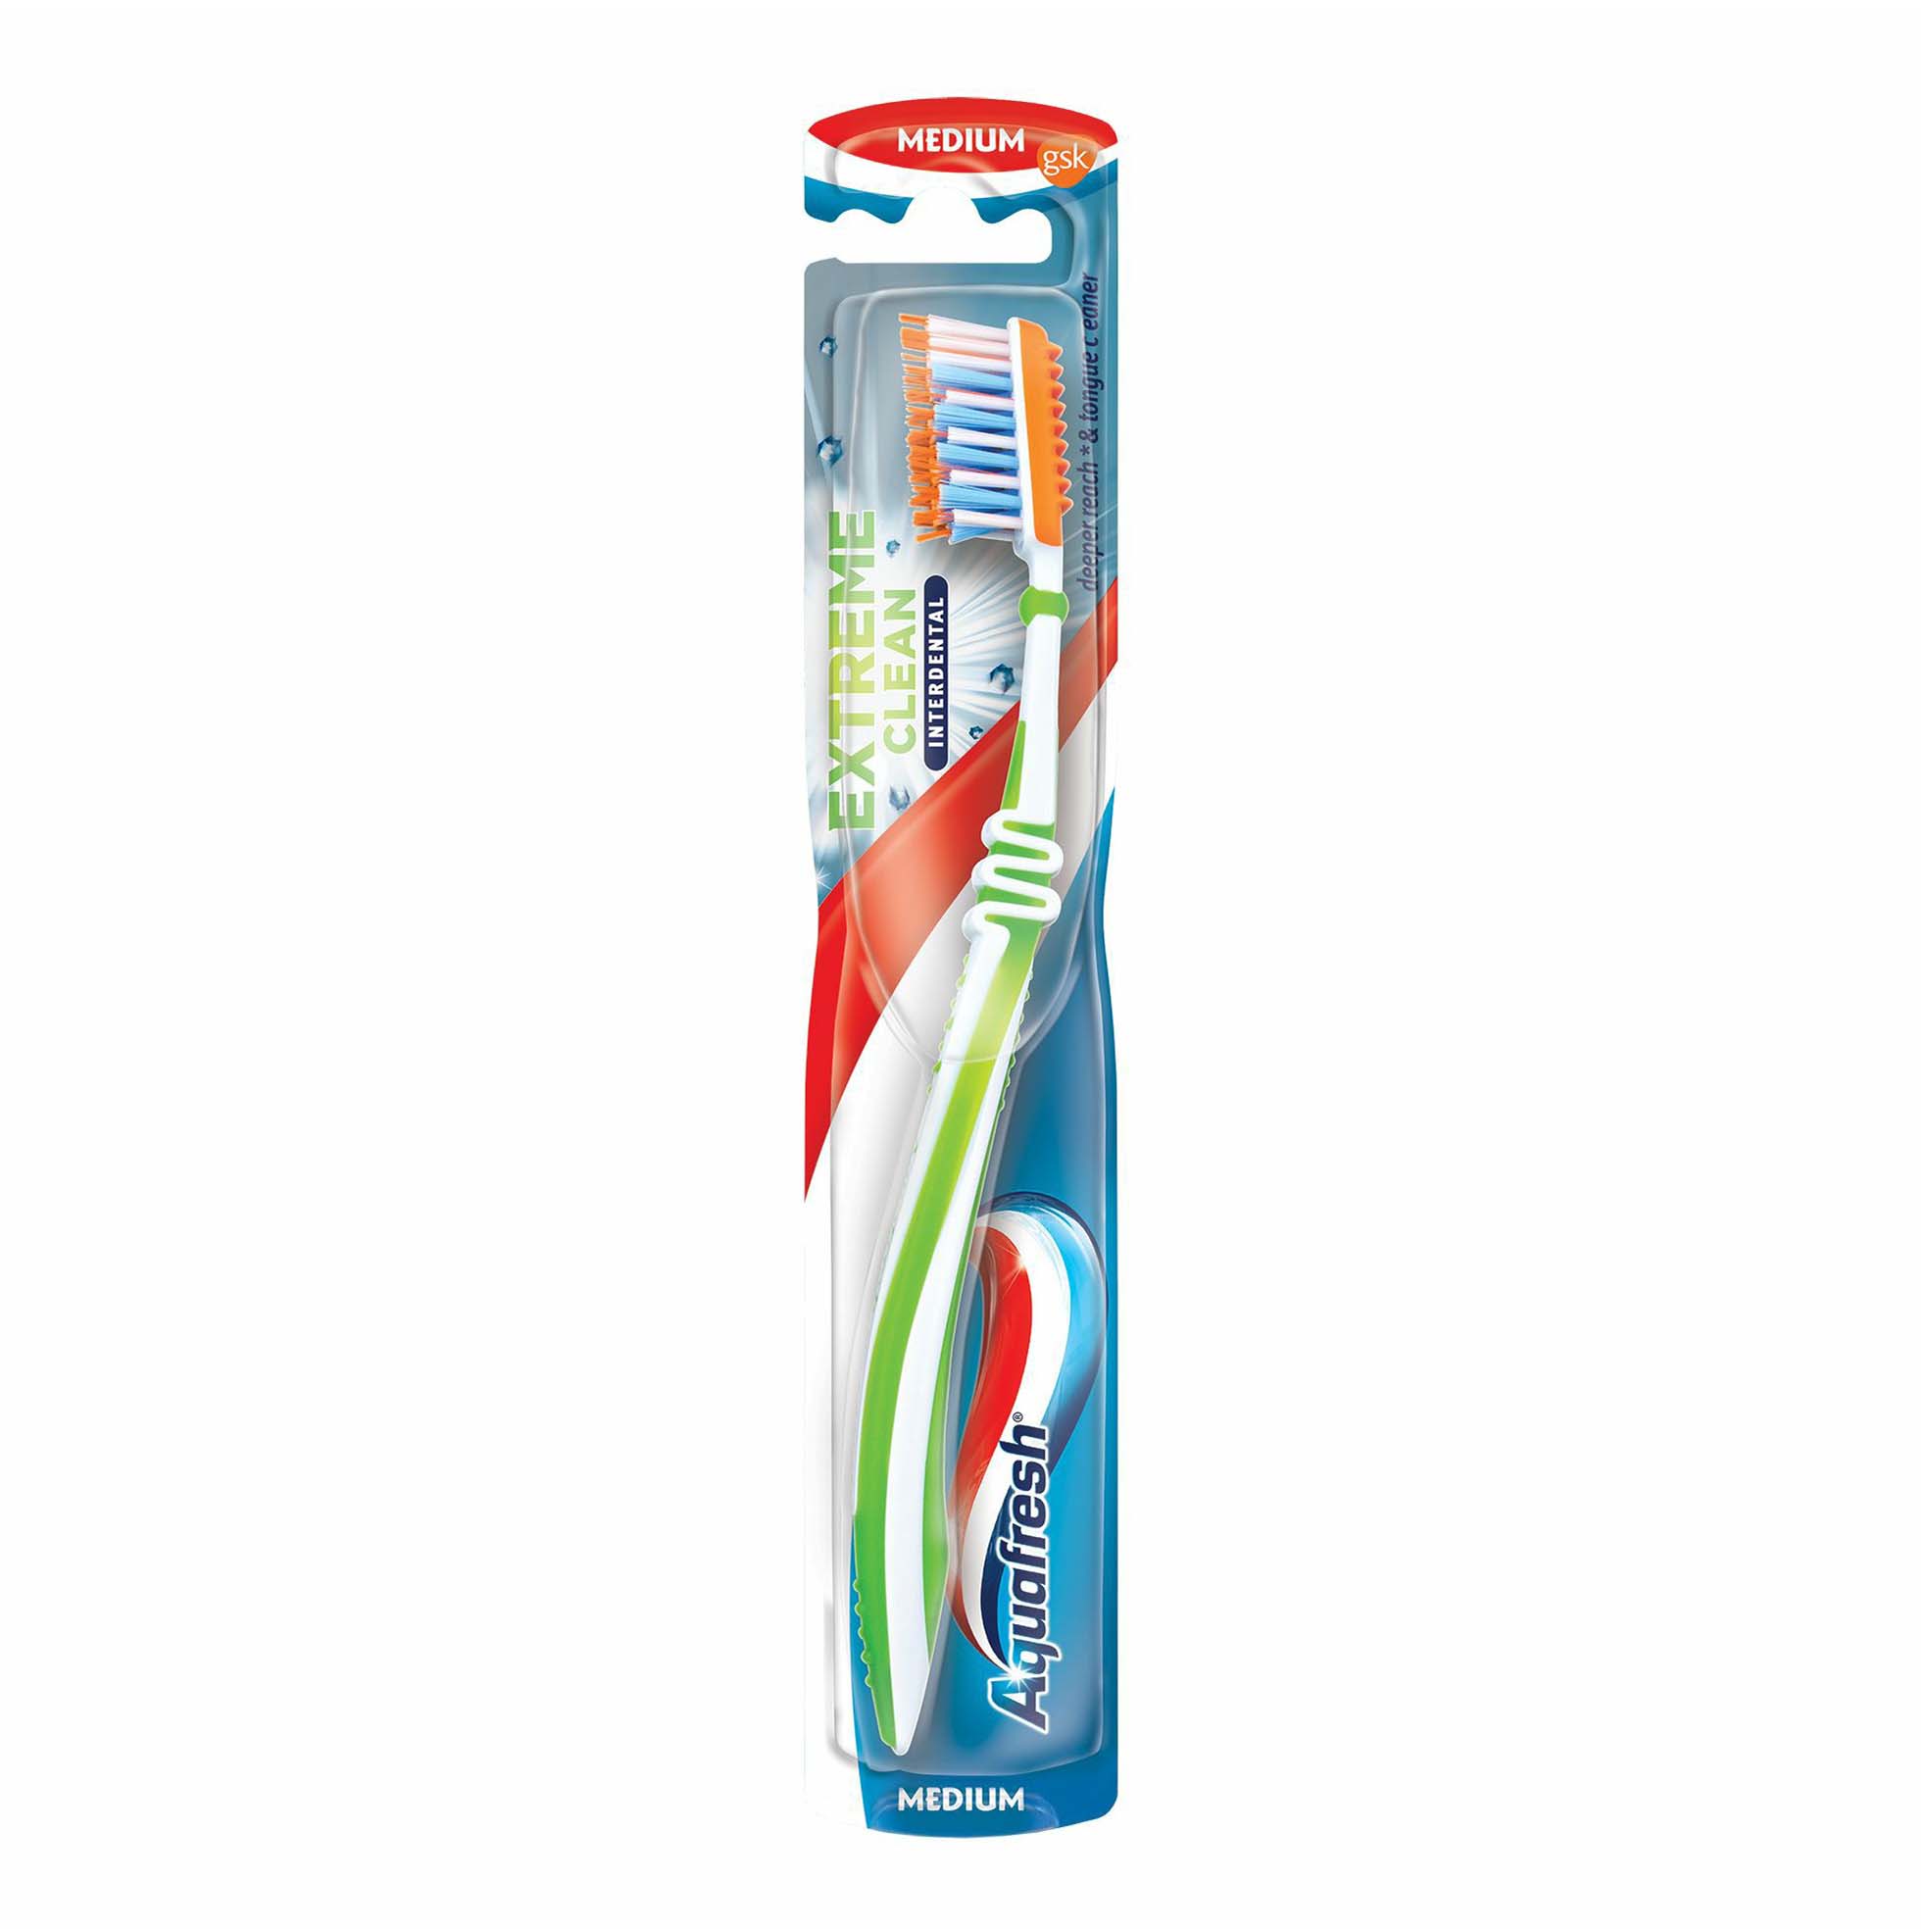 Зубная щетка Aquafresh Extreme Clean medium средней жесткости  - Купить